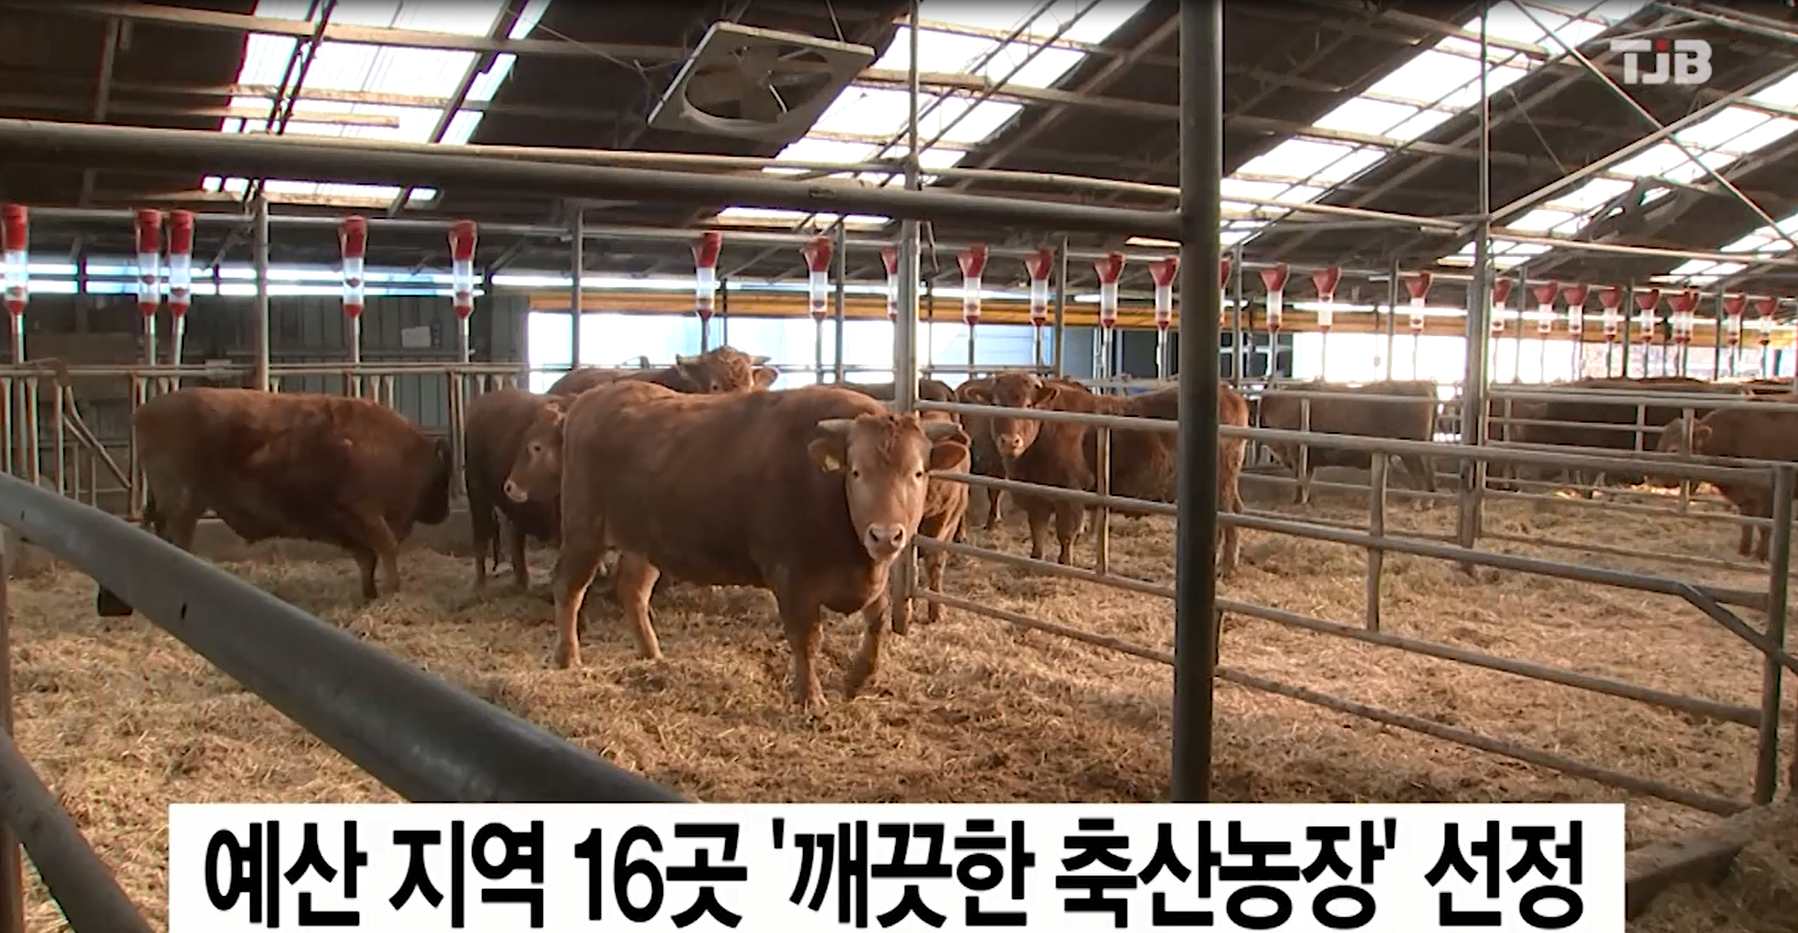 예산지역 16곳 깨끗한 축산 농장 선정(TJB뉴스)